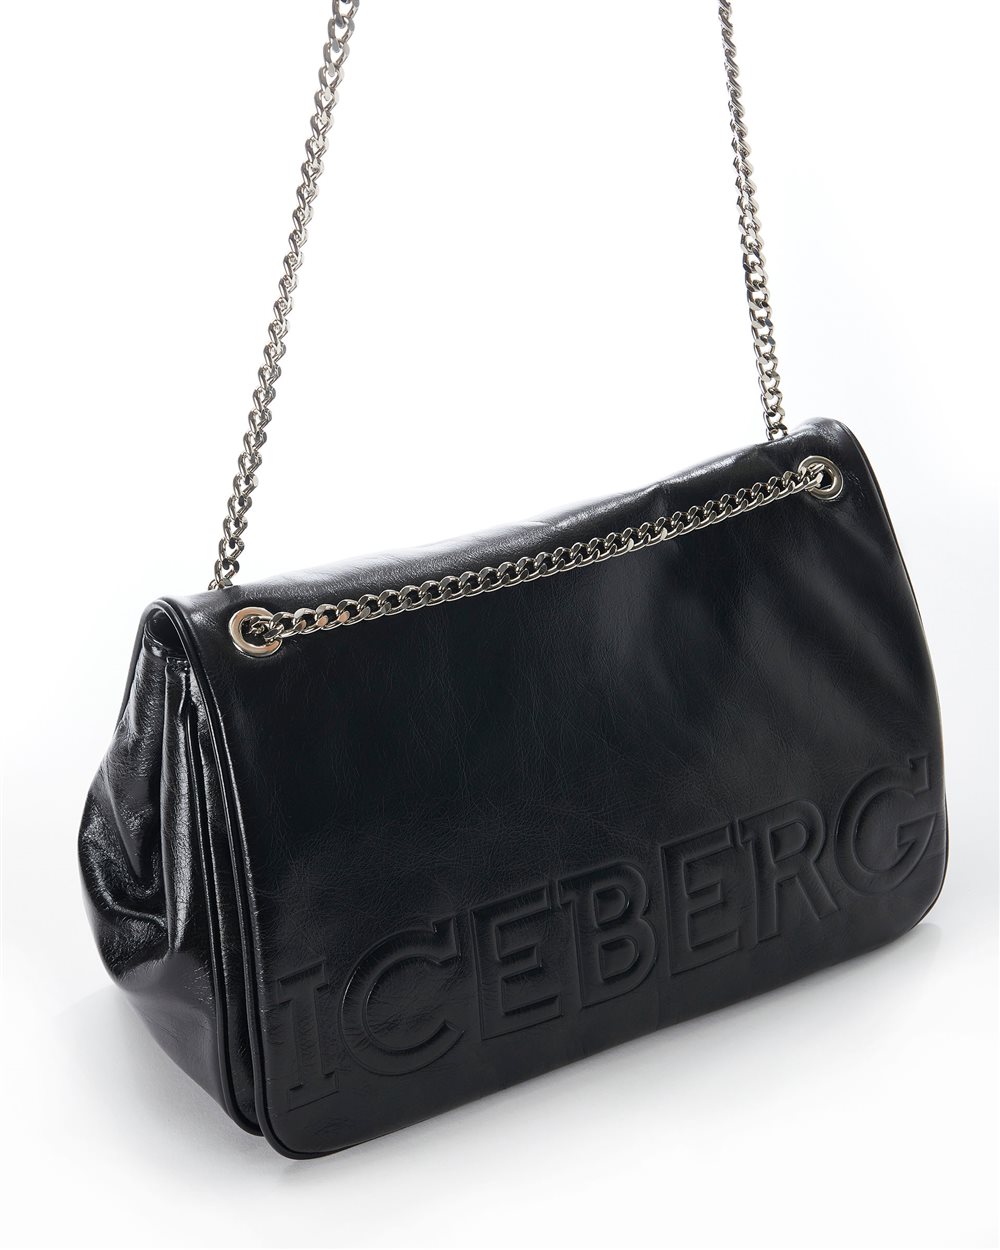 Shoulder bag with logo - Iceberg - Official Website